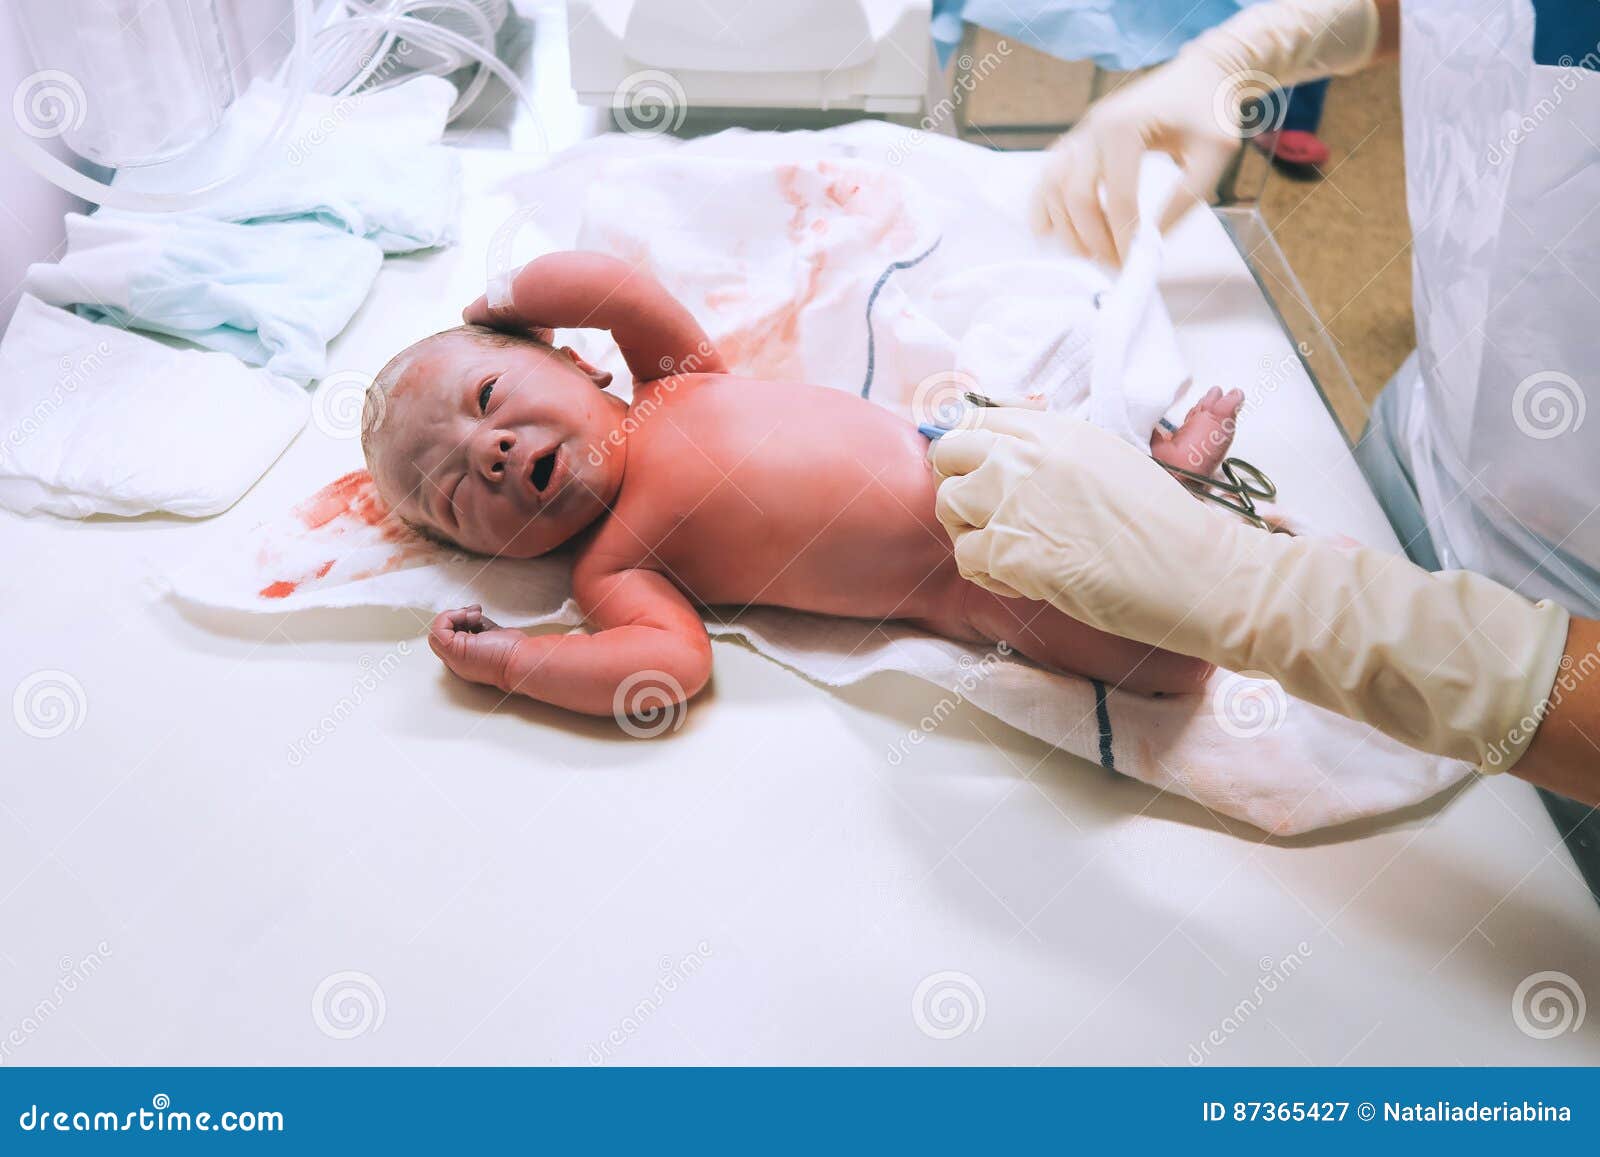 newborn in nursery after childbirth.